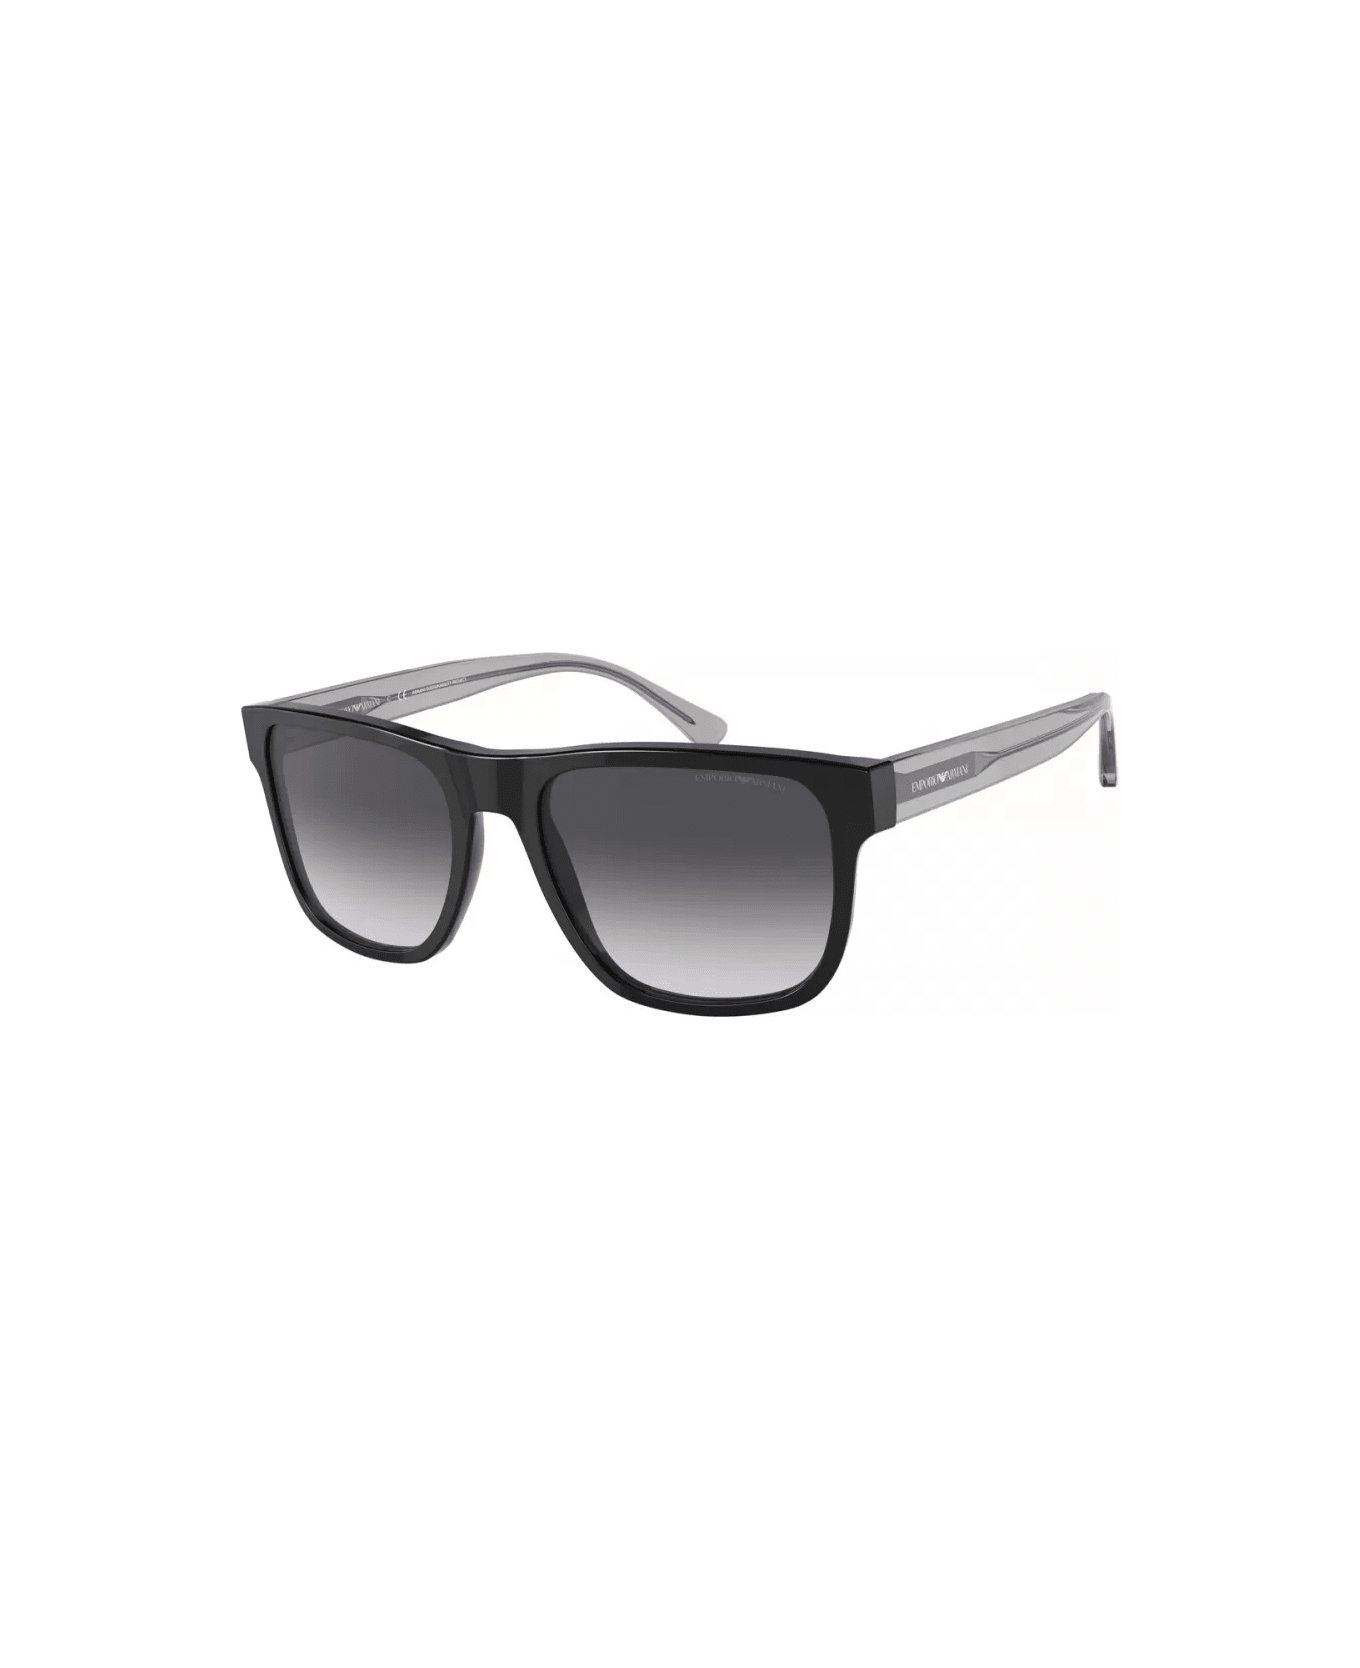 Emporio Armani EA4163 5875/8G Sunglasses